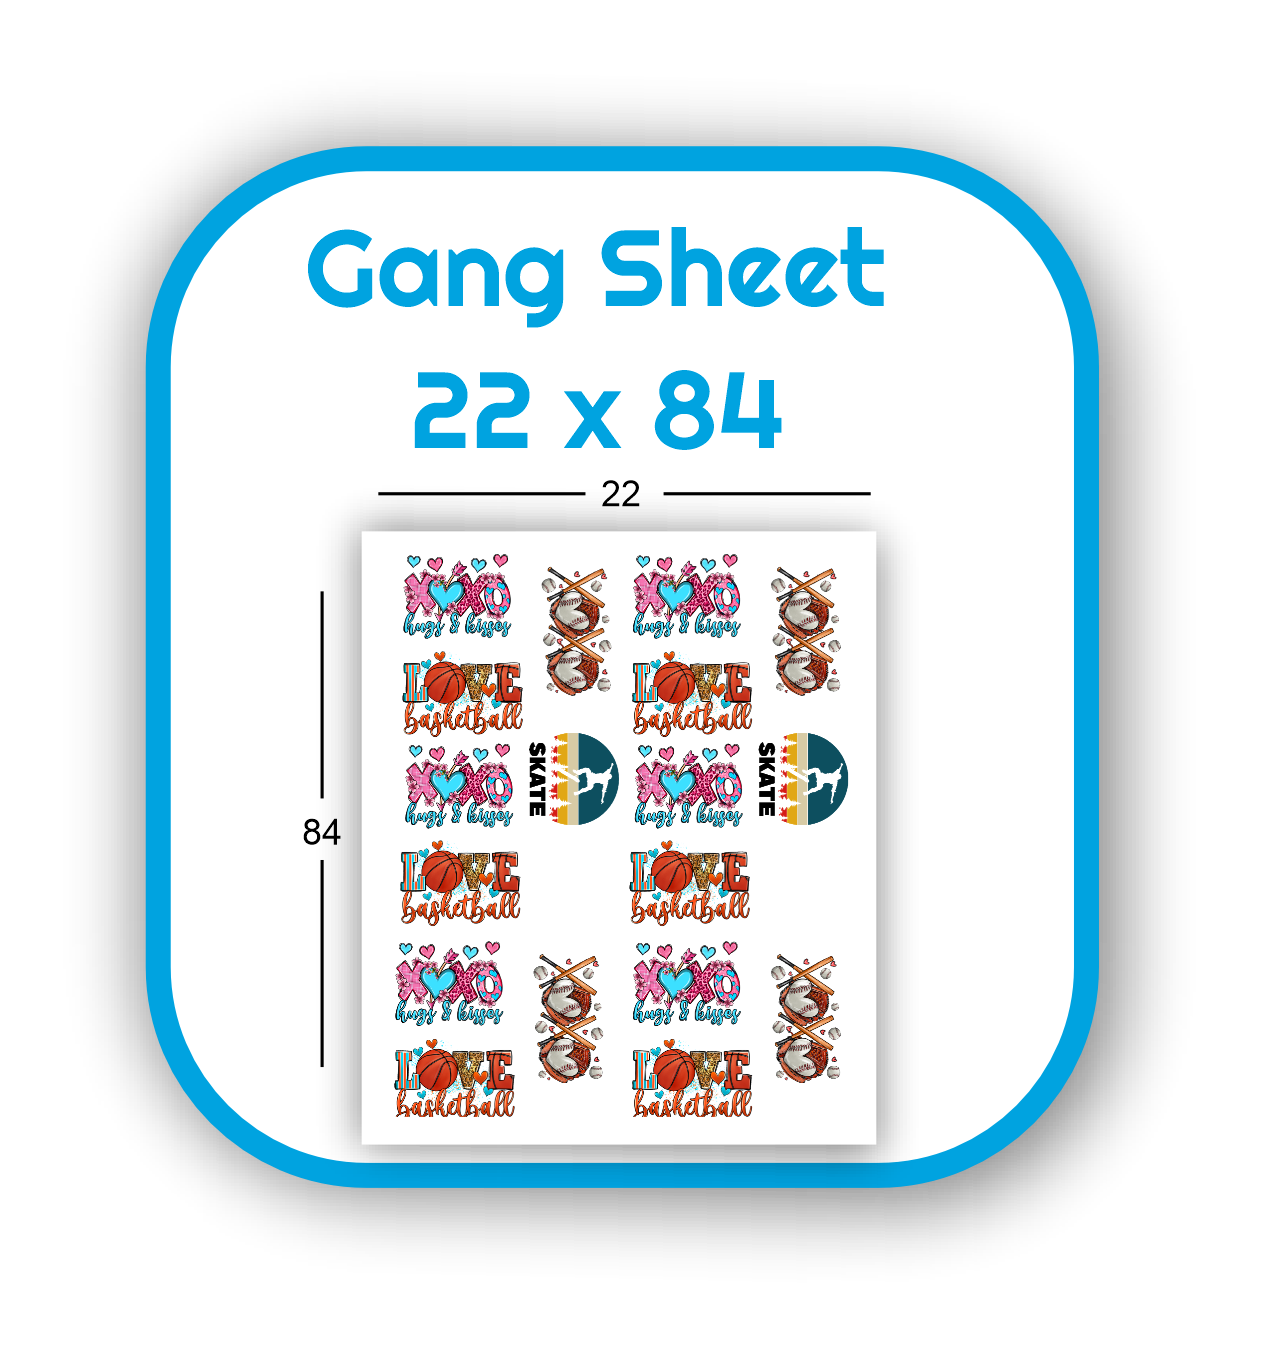 gang-sheet-22x84